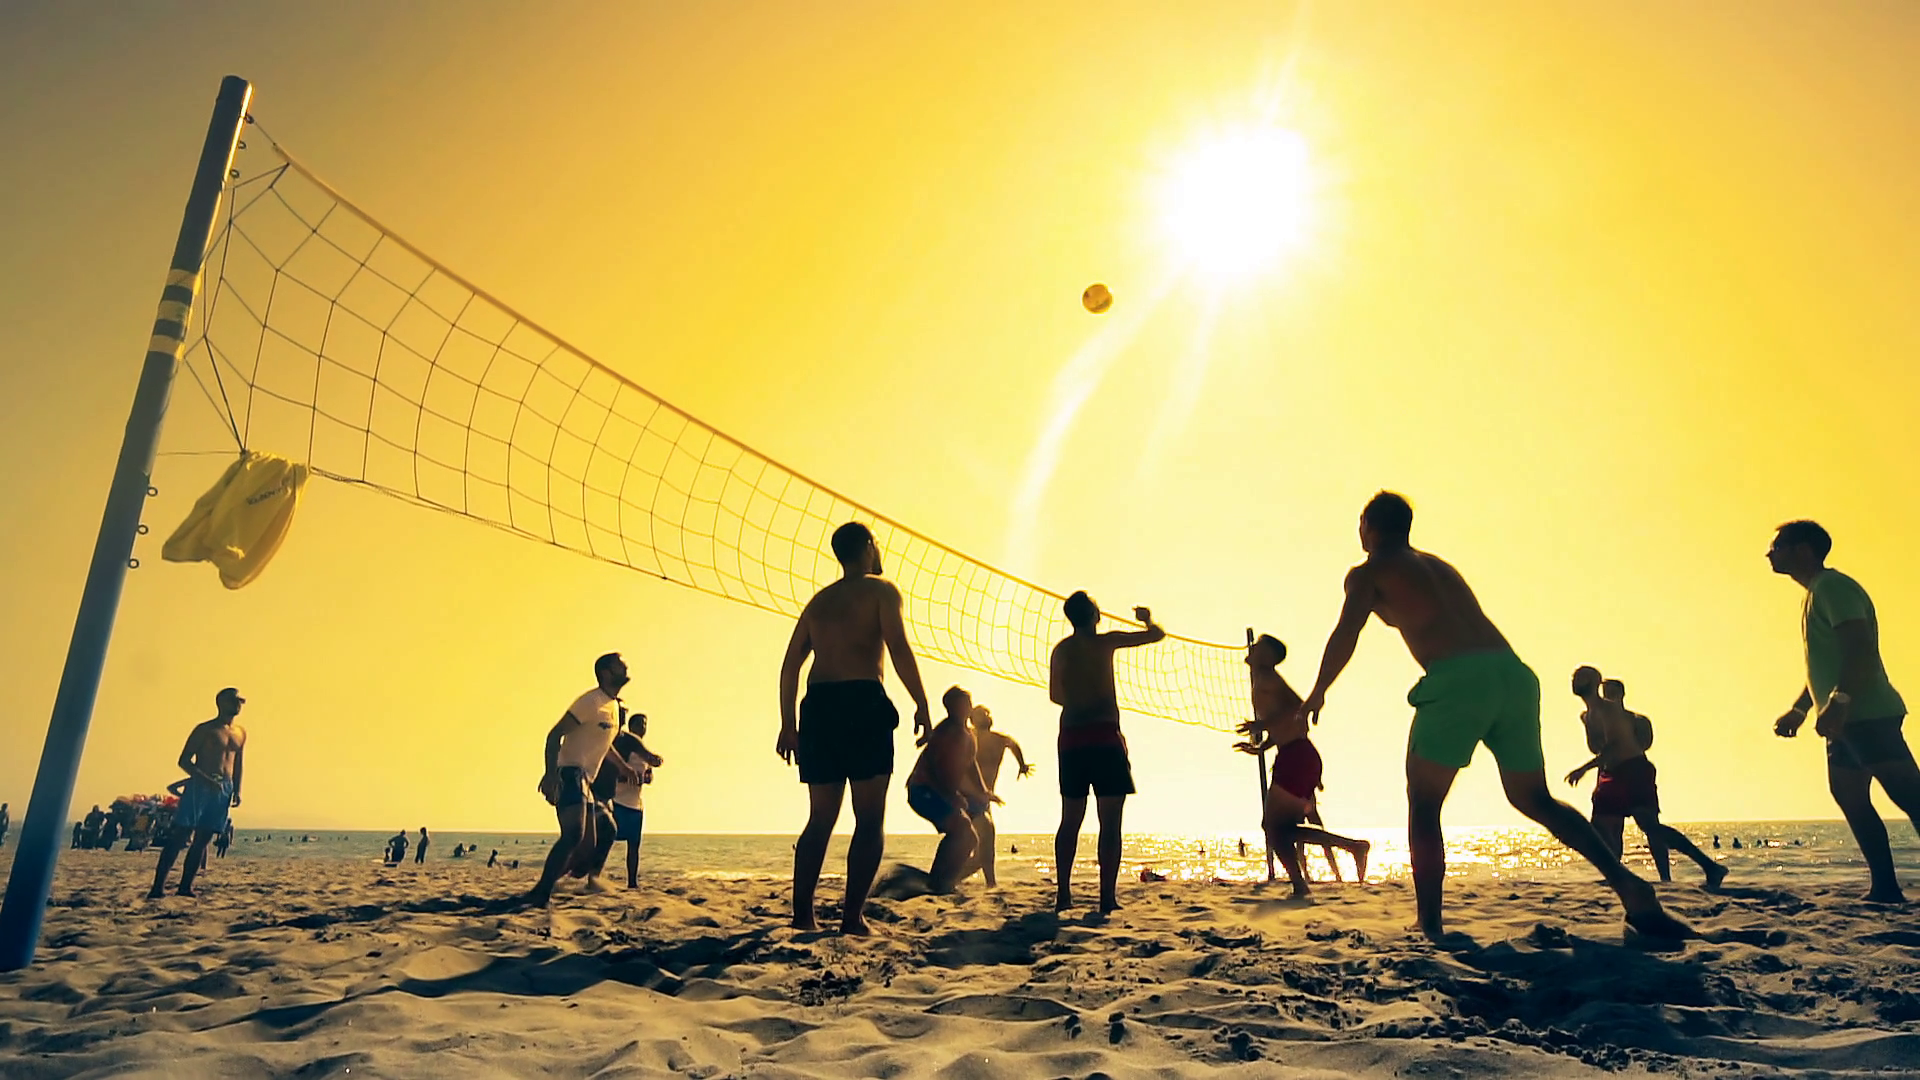 What sport do you enjoy. Волейбол на пляже. Пляжный волейбол. Волейбол семья. Пляж волейбол фон.